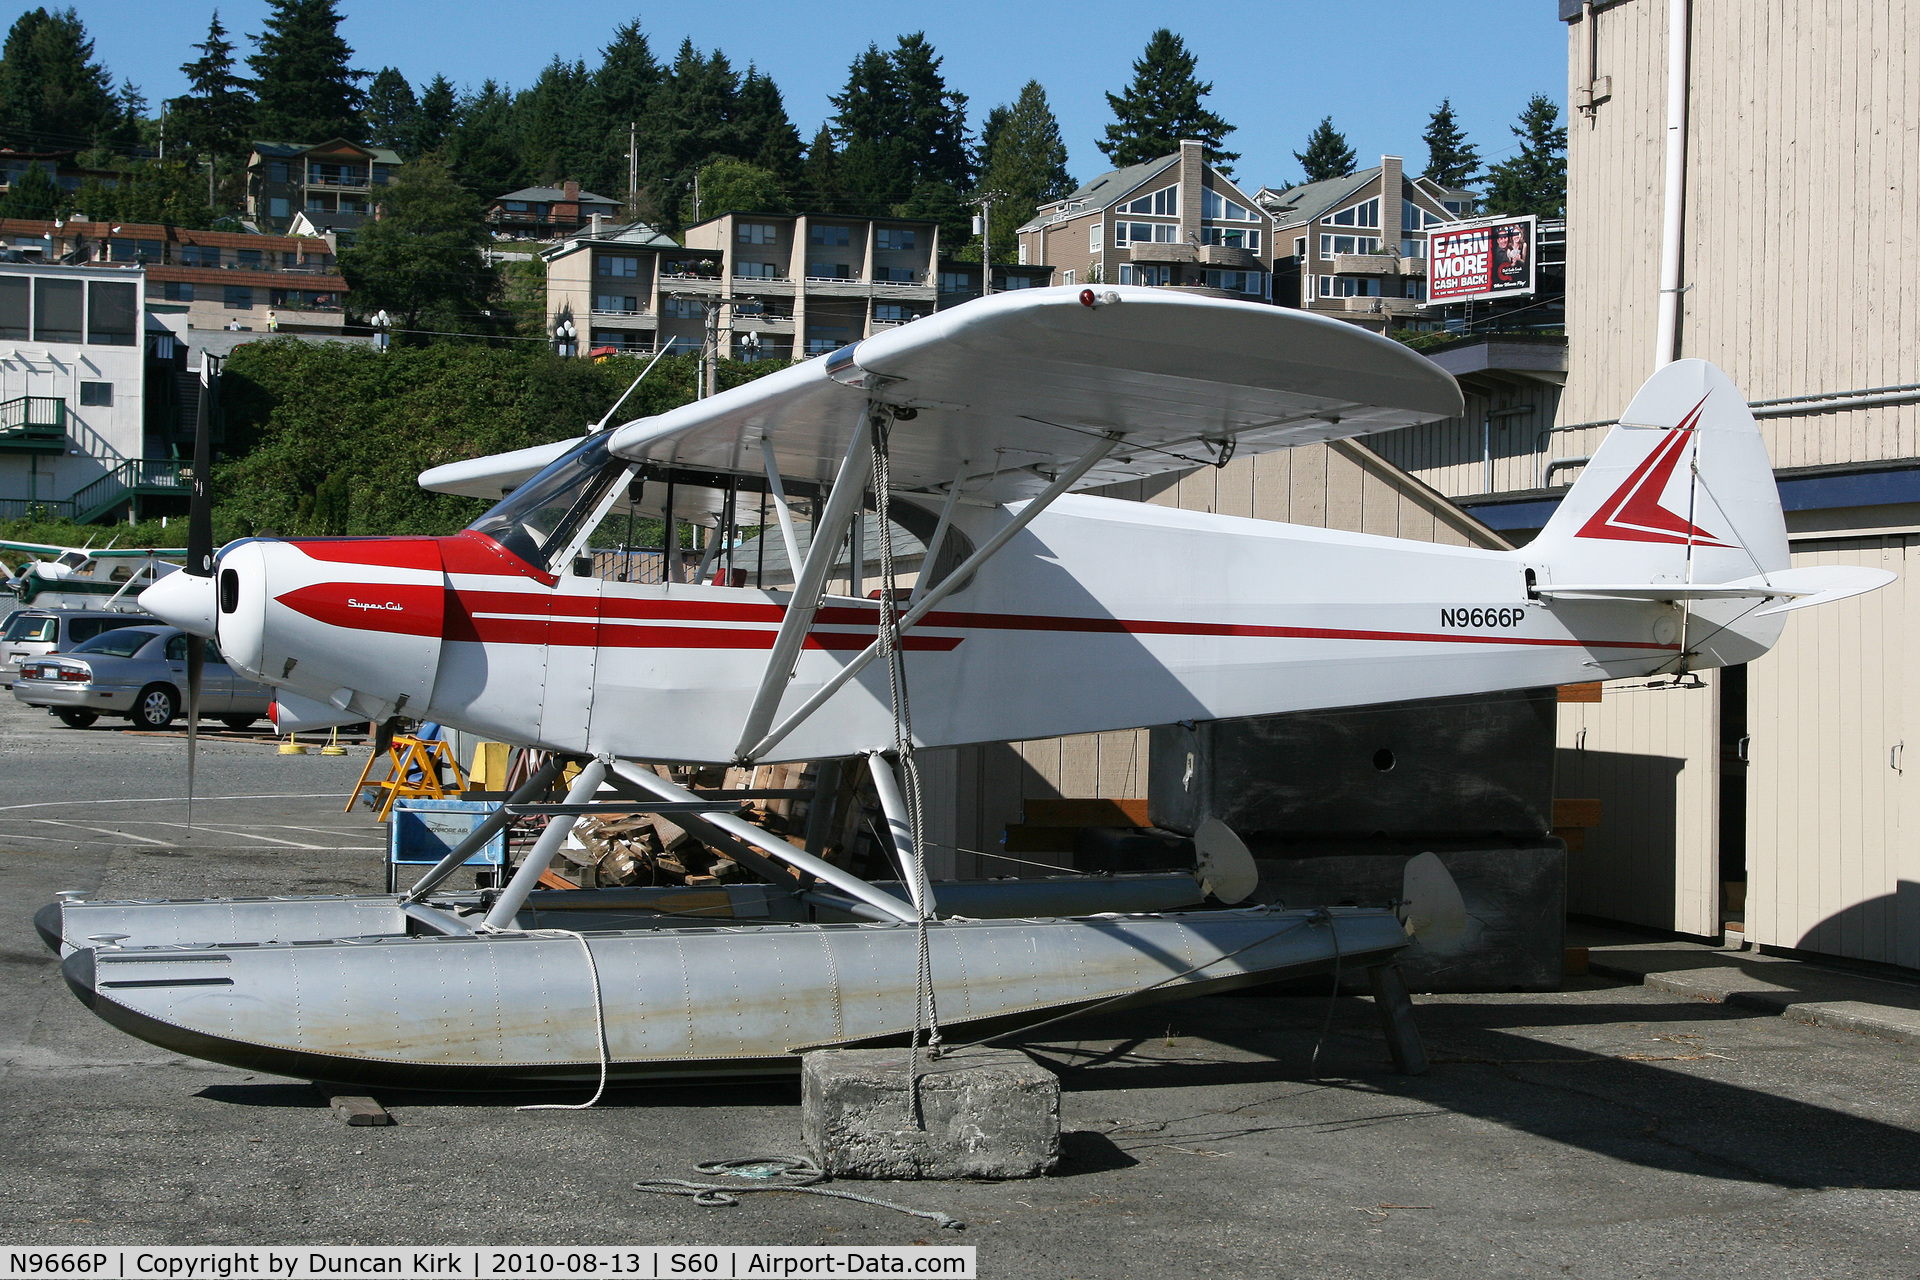 N9666P, 1974 Piper PA-18-150 Super Cub C/N 18-7509011, Summer at Kenmore Air Harbor